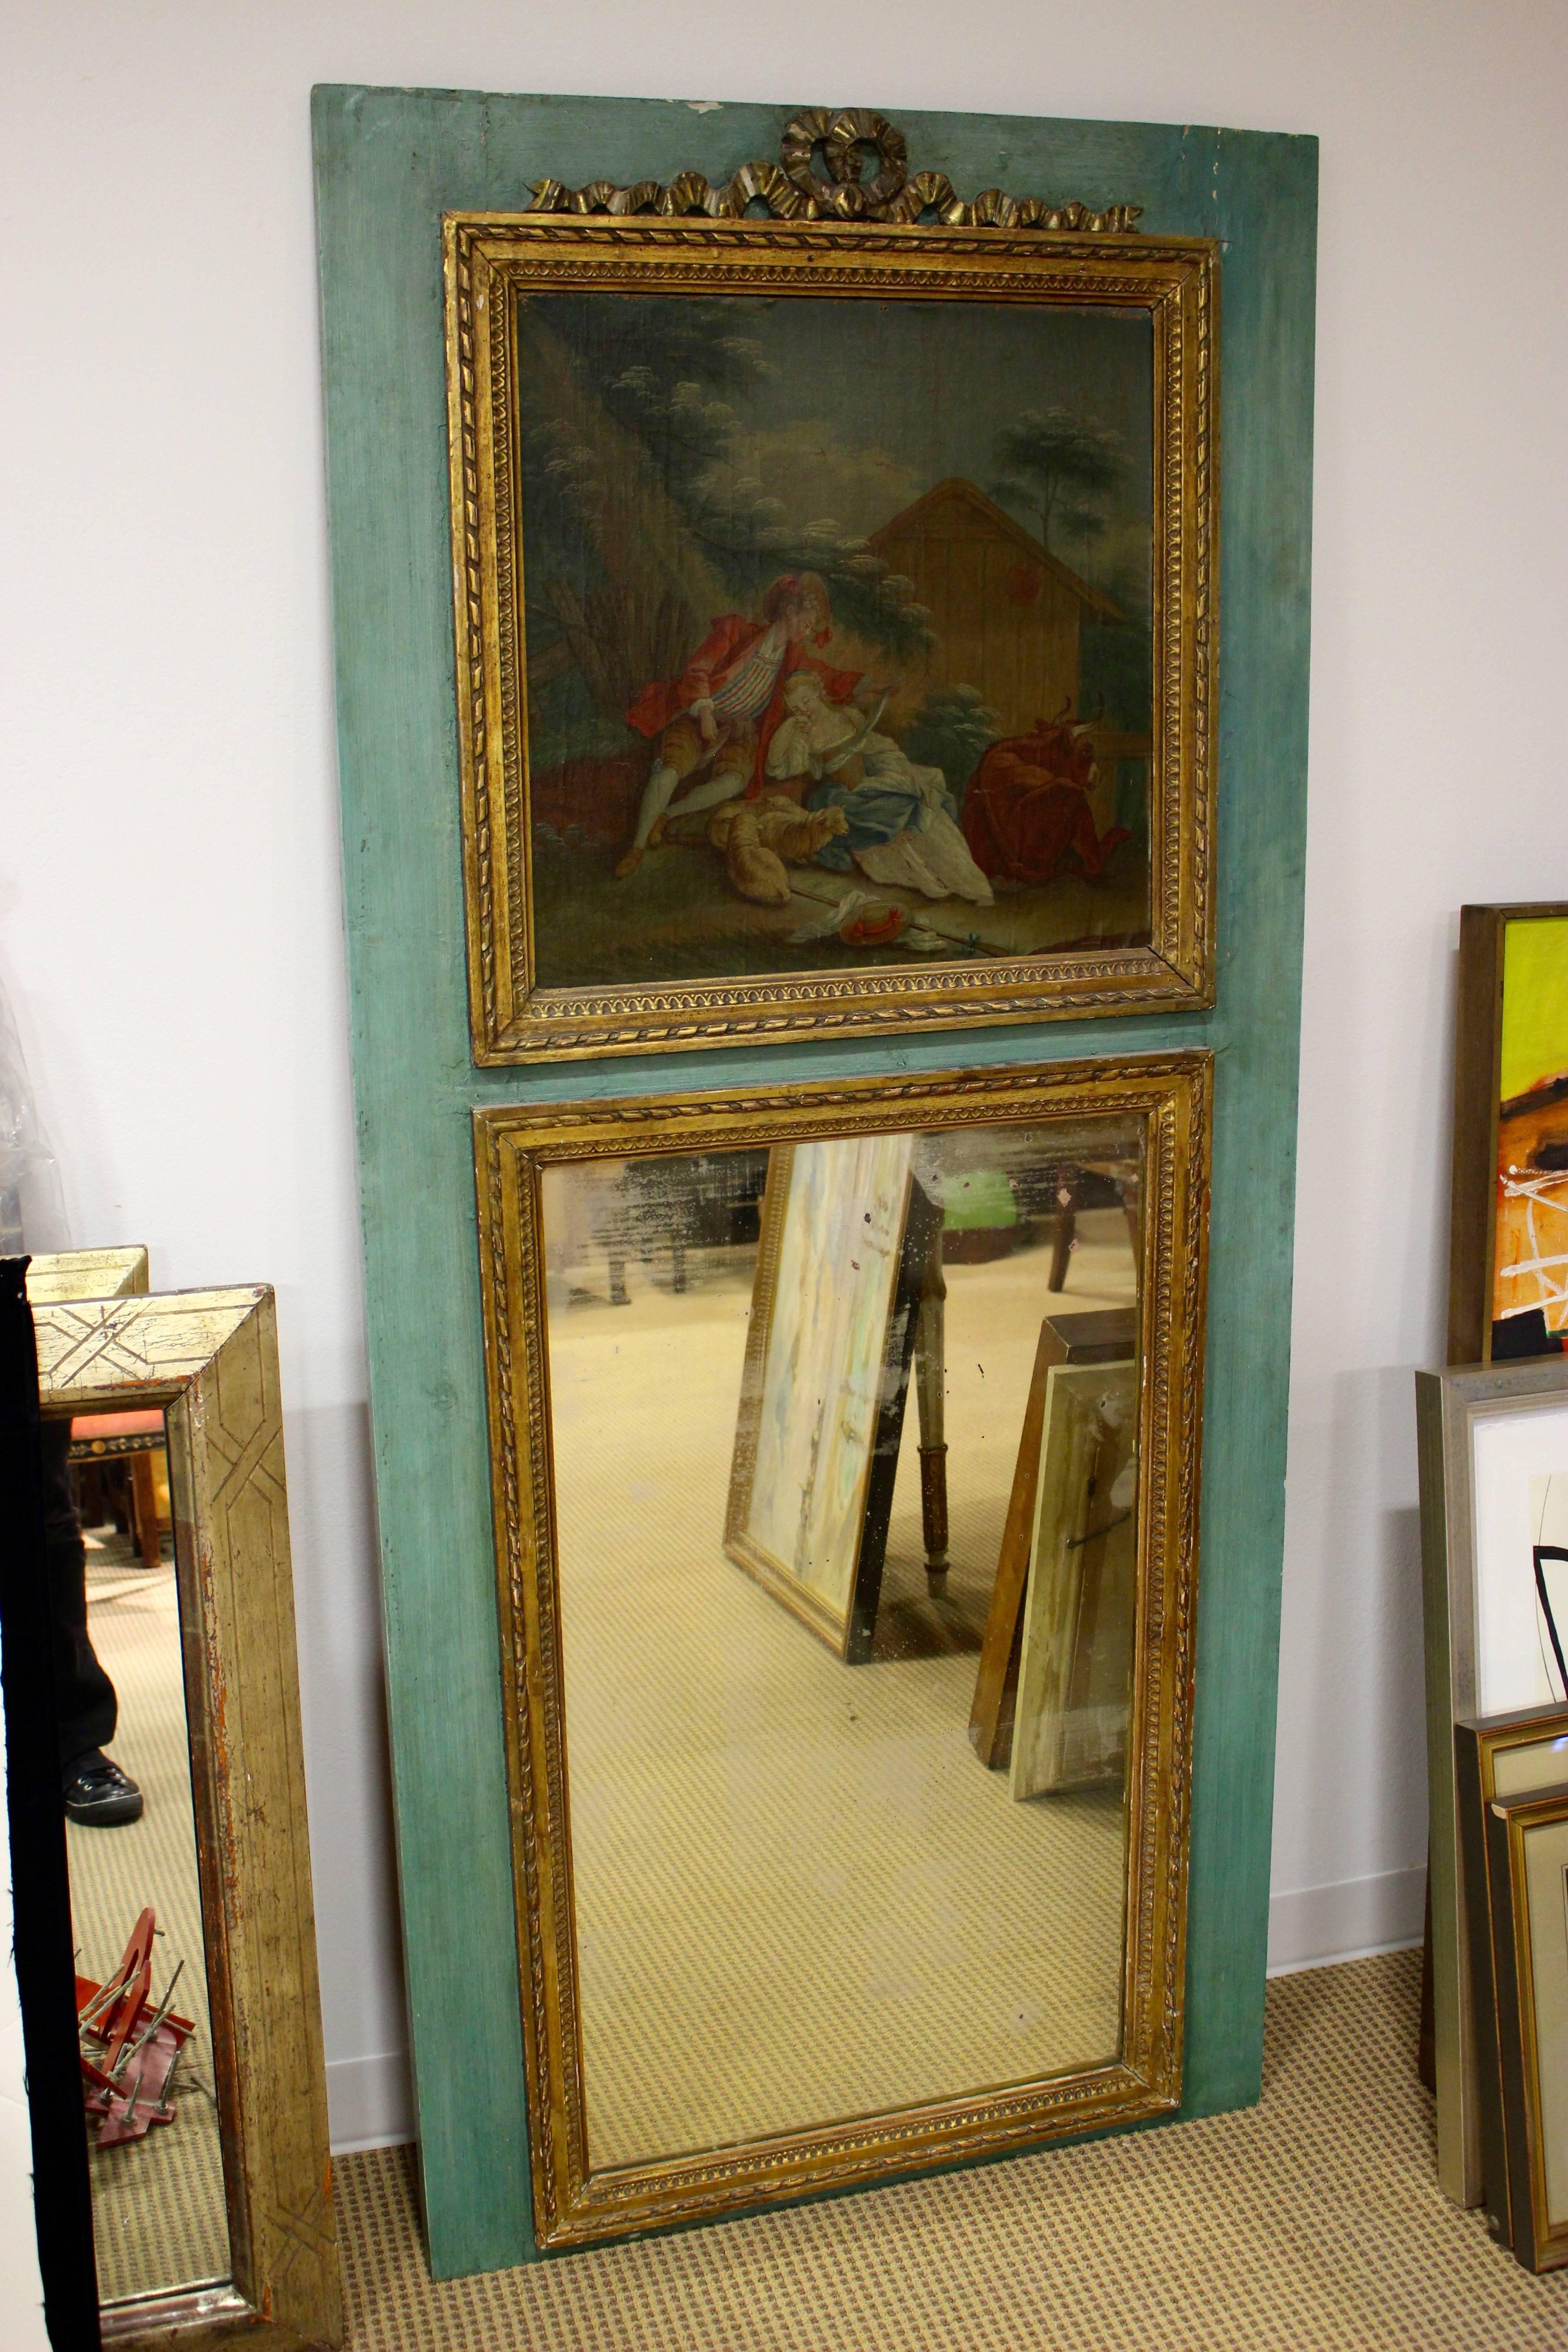 Ein französischer Spiegel im Stil Louis XVI aus dem 19. Jahrhundert mit gemalter Szene eines Liebespaares und vergoldeten Akzenten. Dieser exquisite Trumeau-Spiegel im Louis-XVI-Stil hat einen blau-grünen Hintergrund, auf dem die exquisite gemalte